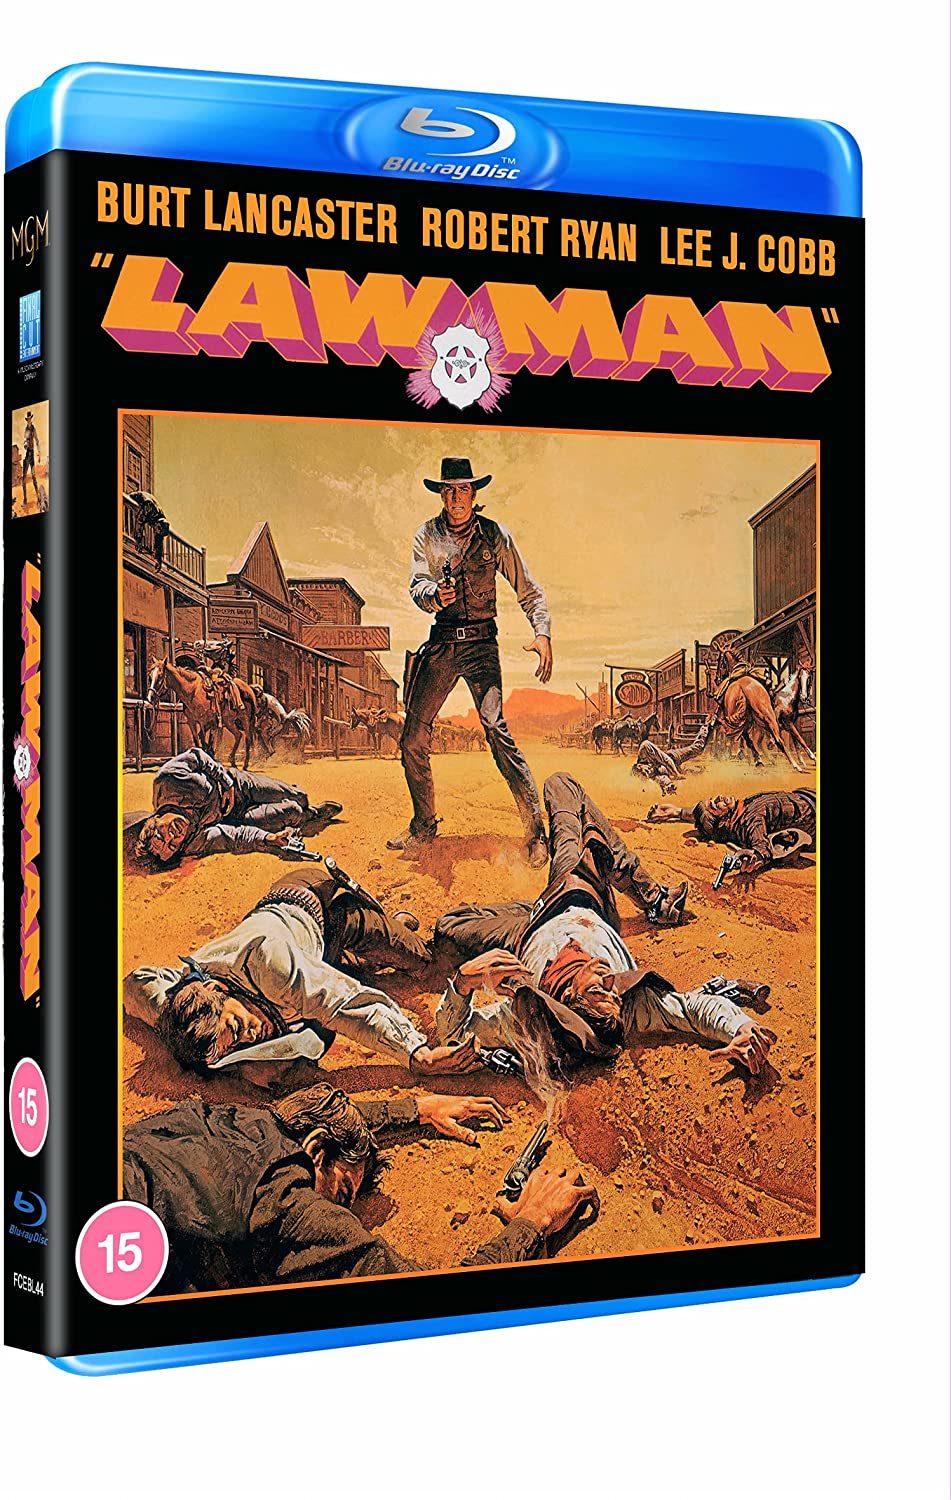 Lawman - Revisionist Western [Blu-ray]